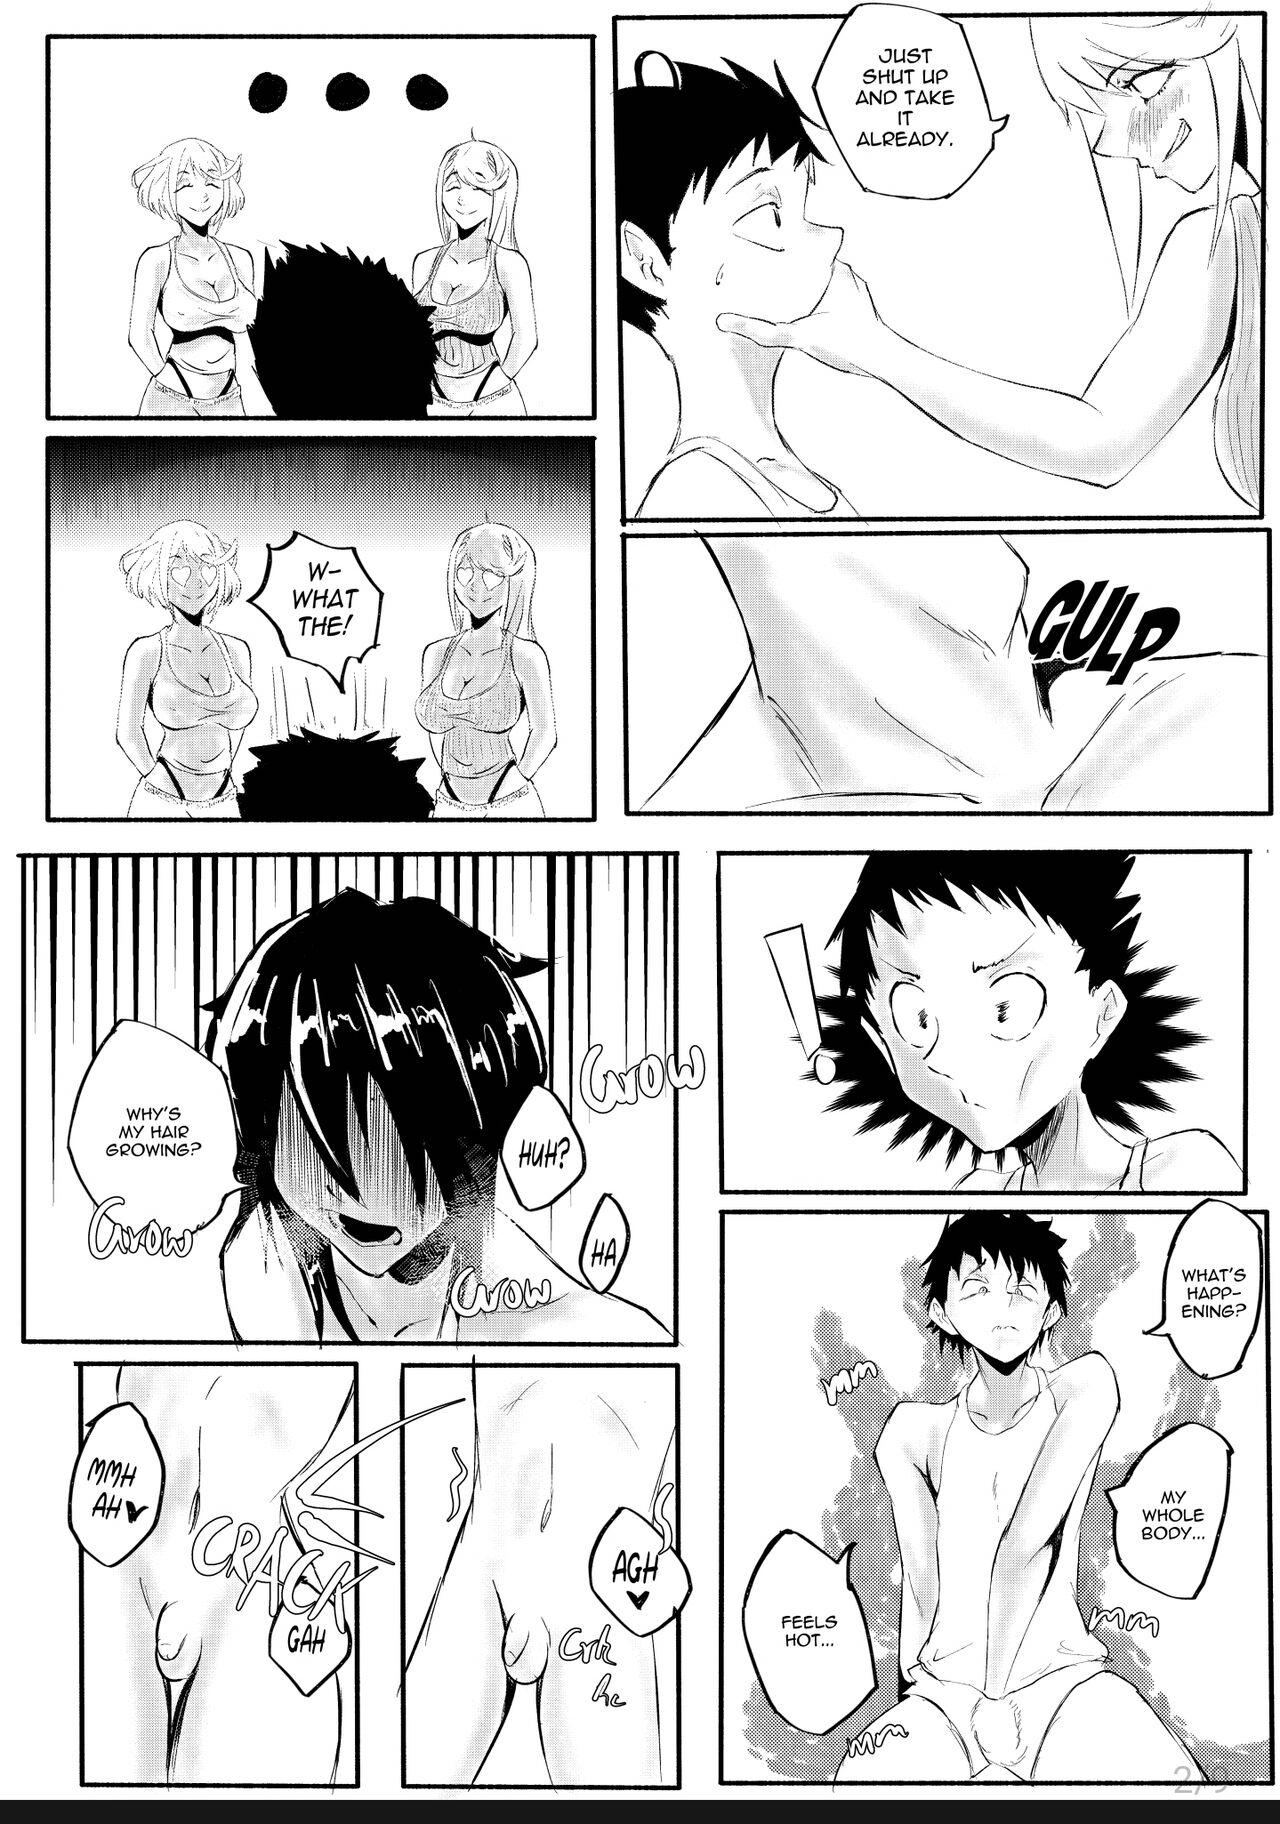 Bribe Xenoblade 2 gender transformation Manga Peeing - Page 2